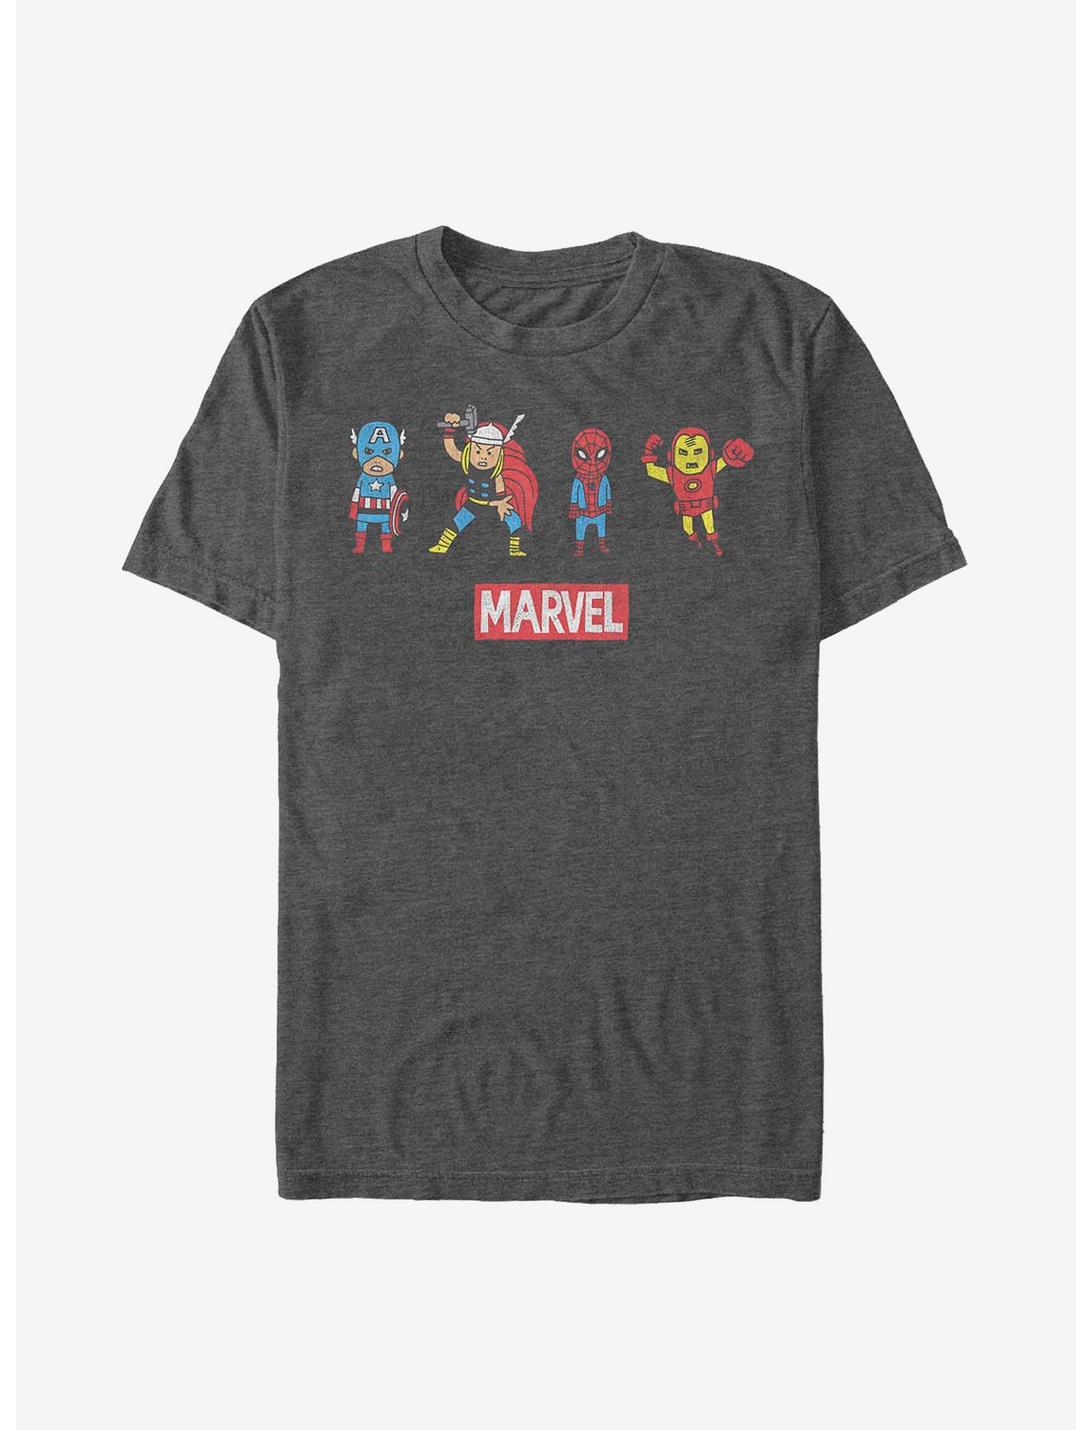 Marvel Avengers Pop Art Group T-Shirt, CHAR HTR, hi-res